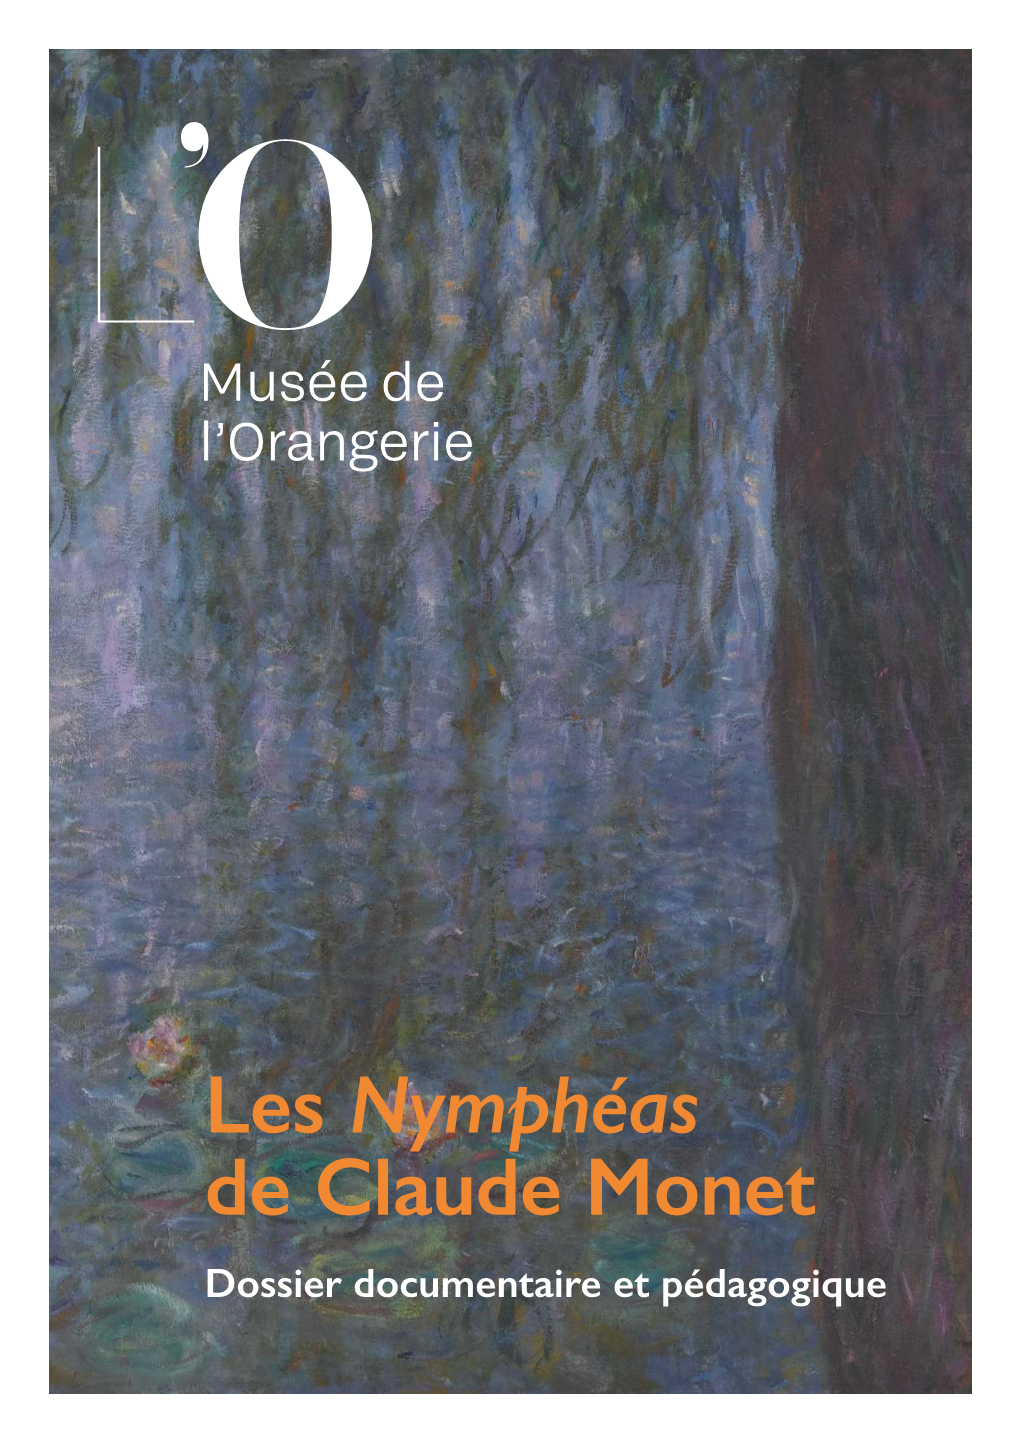 Les Nymphéas De Claude Monet Dossier Documentaire Et Pédagogique Une Victoire De L’Art Sur Le Temps